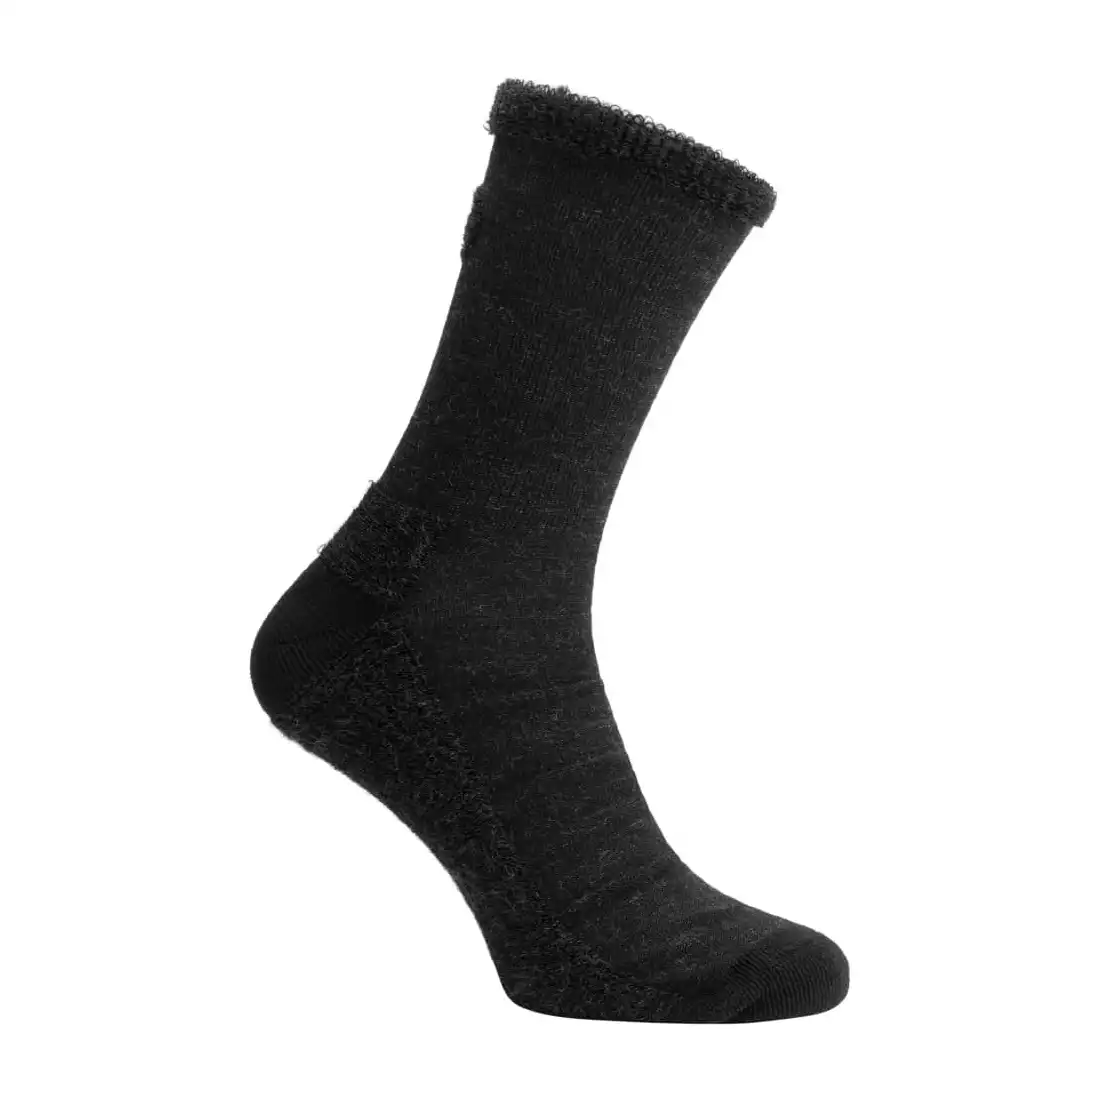 Rogelli TERRY MERINO zimné cyklistické/ športové ponožky, čierna